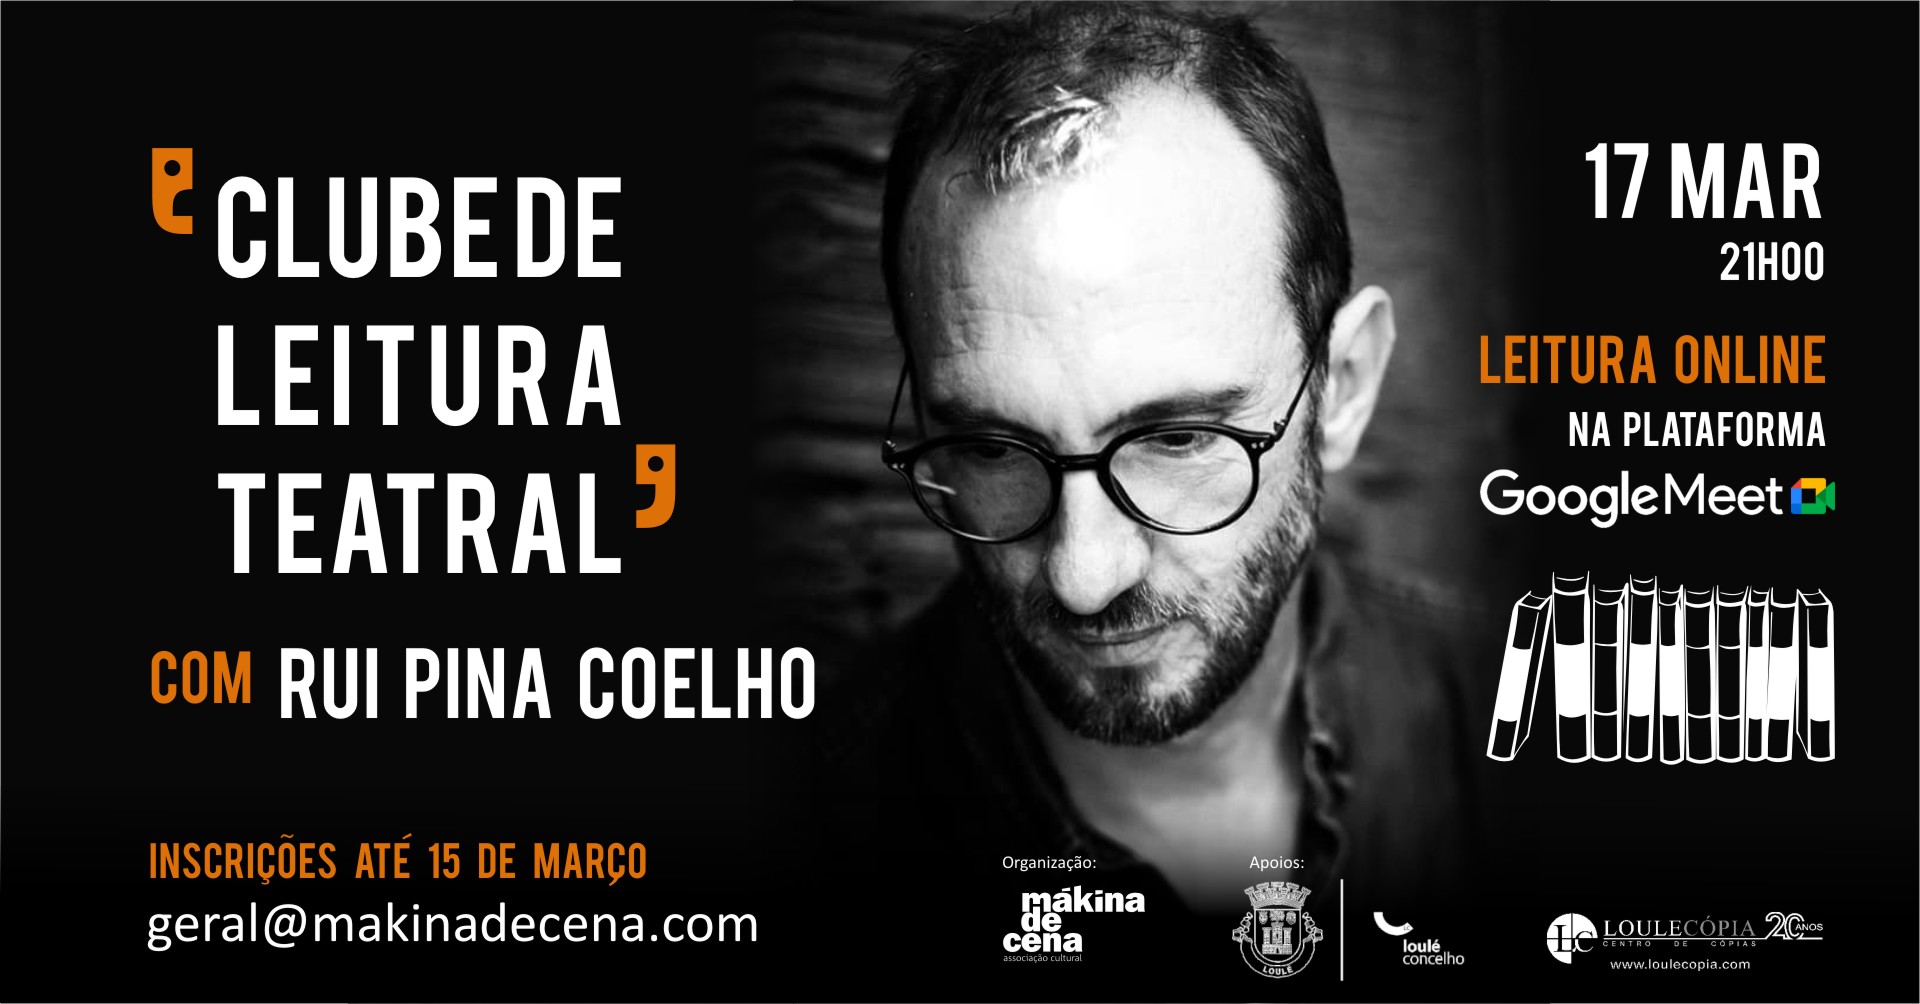 Clube de Leitura Teatral com Rui Pina Coelho